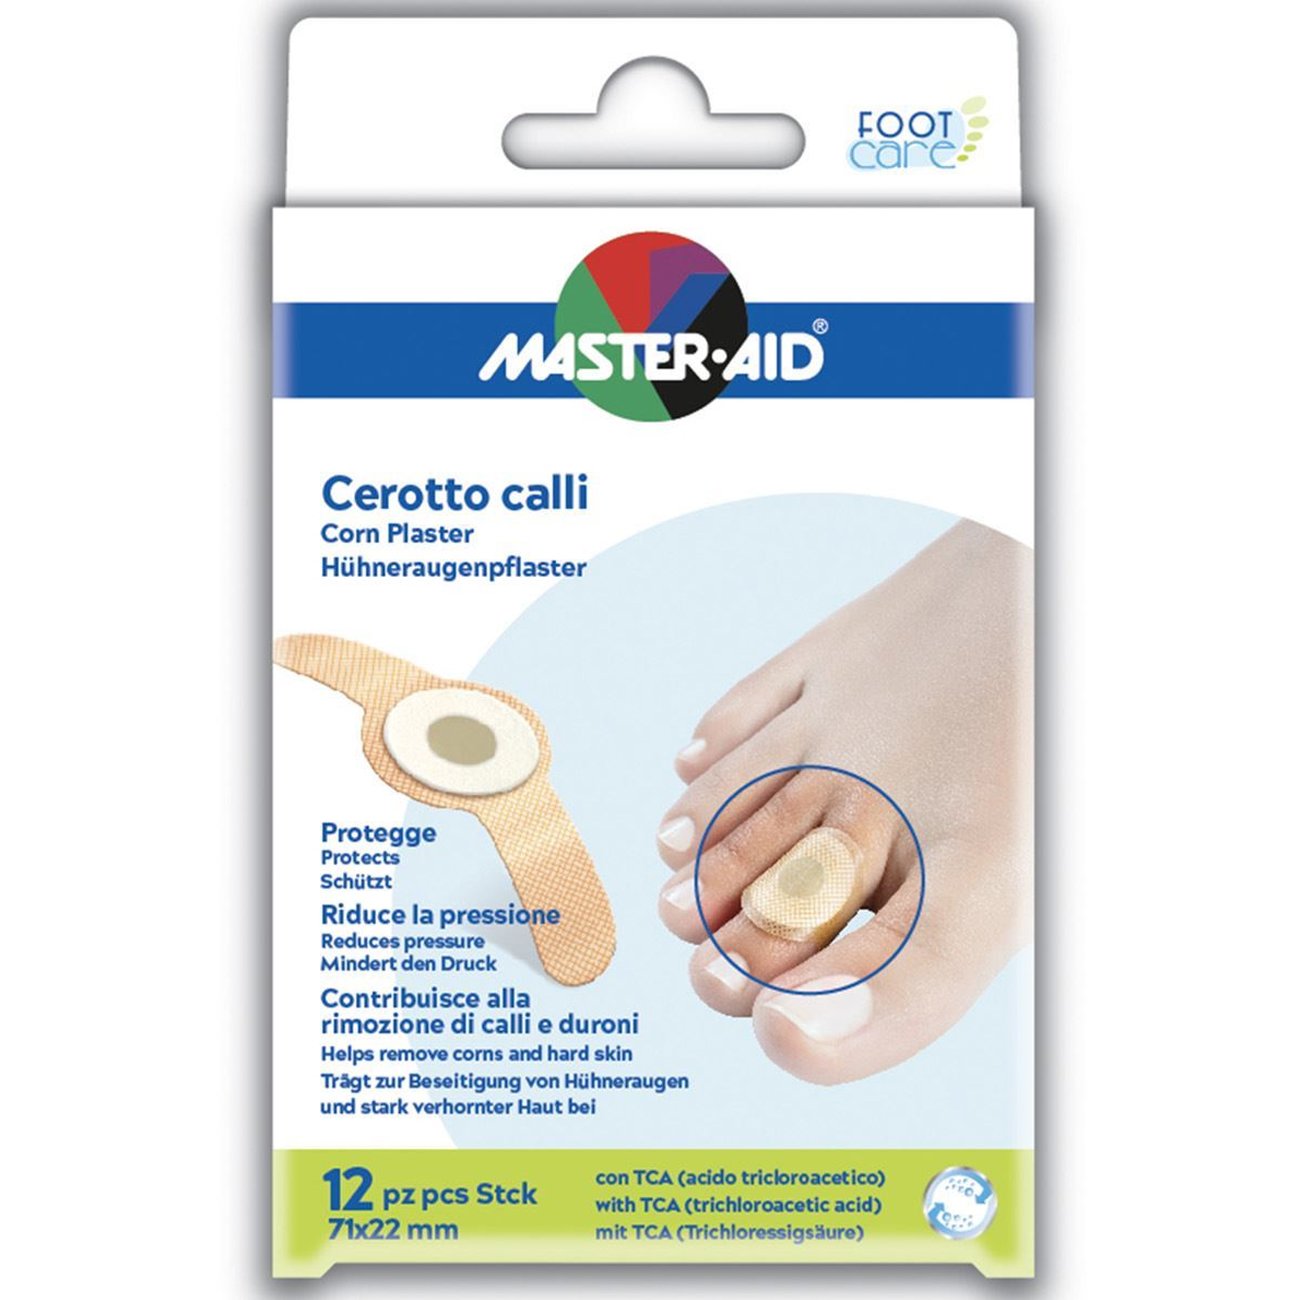 Master Aid Cerotto Calli Corn Plaster 71x22 mm Αφαιρετικά Επιθέματα με Τριχλωροξικό Οξύ για την Αφαίρεση Κάλων & Σκληρύνσεων 12 Τεμάχια